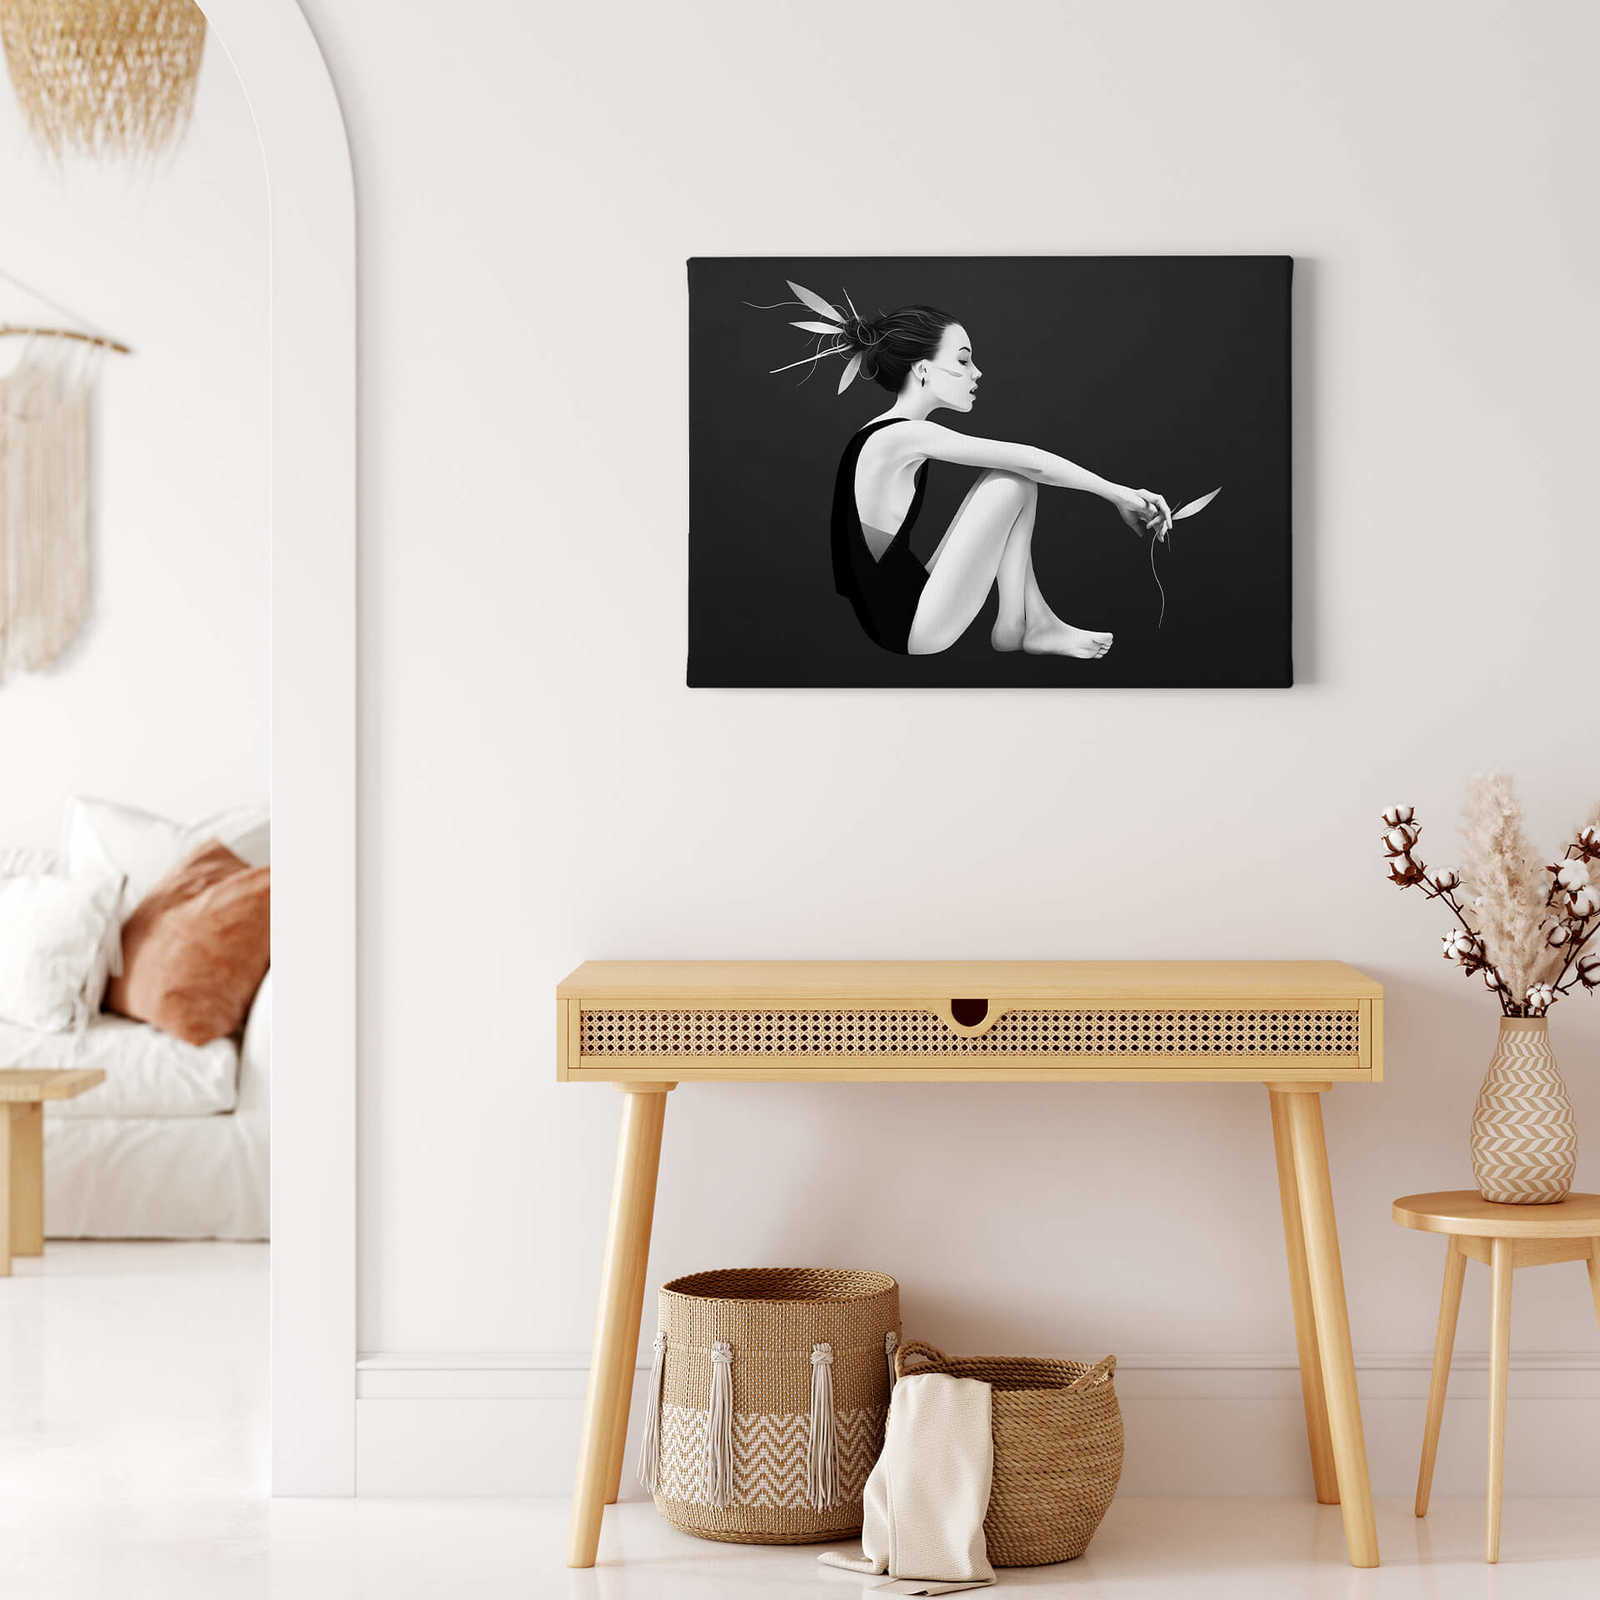             Pintura sobre lienzo en blanco y negro "Skyling" con figura de mujer - 0,70 m x 0,50 m
        